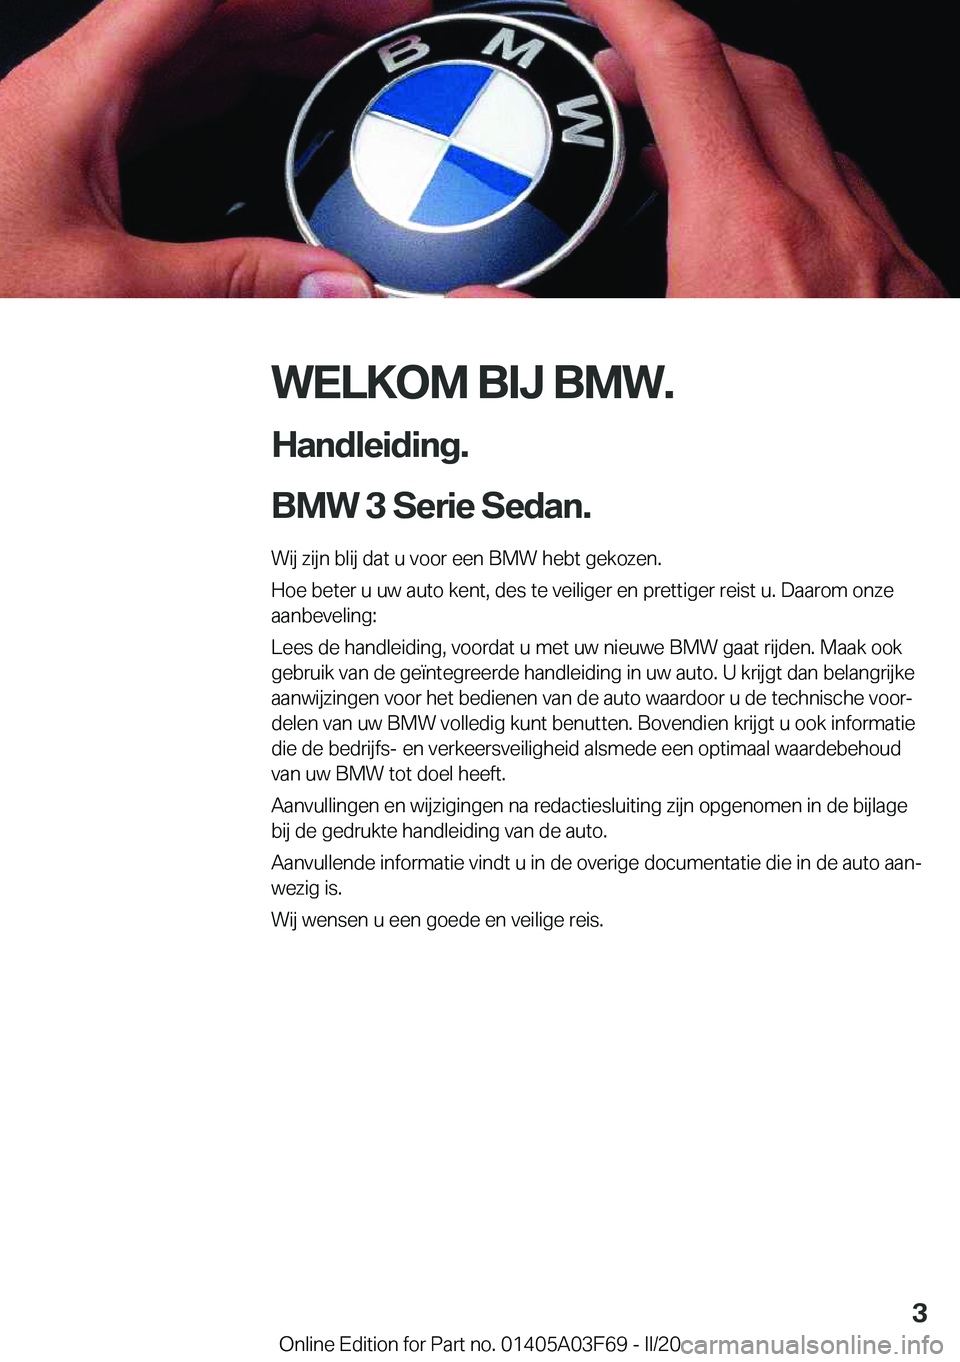 BMW 3 SERIES 2020  Instructieboekjes (in Dutch) �W�E�L�K�O�M��B�I�J��B�M�W�.
�H�a�n�d�l�e�i�d�i�n�g�.
�B�M�W��3��S�e�r�i�e��S�e�d�a�n�. �W�i�j��z�i�j�n��b�l�i�j��d�a�t��u��v�o�o�r��e�e�n��B�M�W��h�e�b�t��g�e�k�o�z�e�n�.
�H�o�e��b�e�t